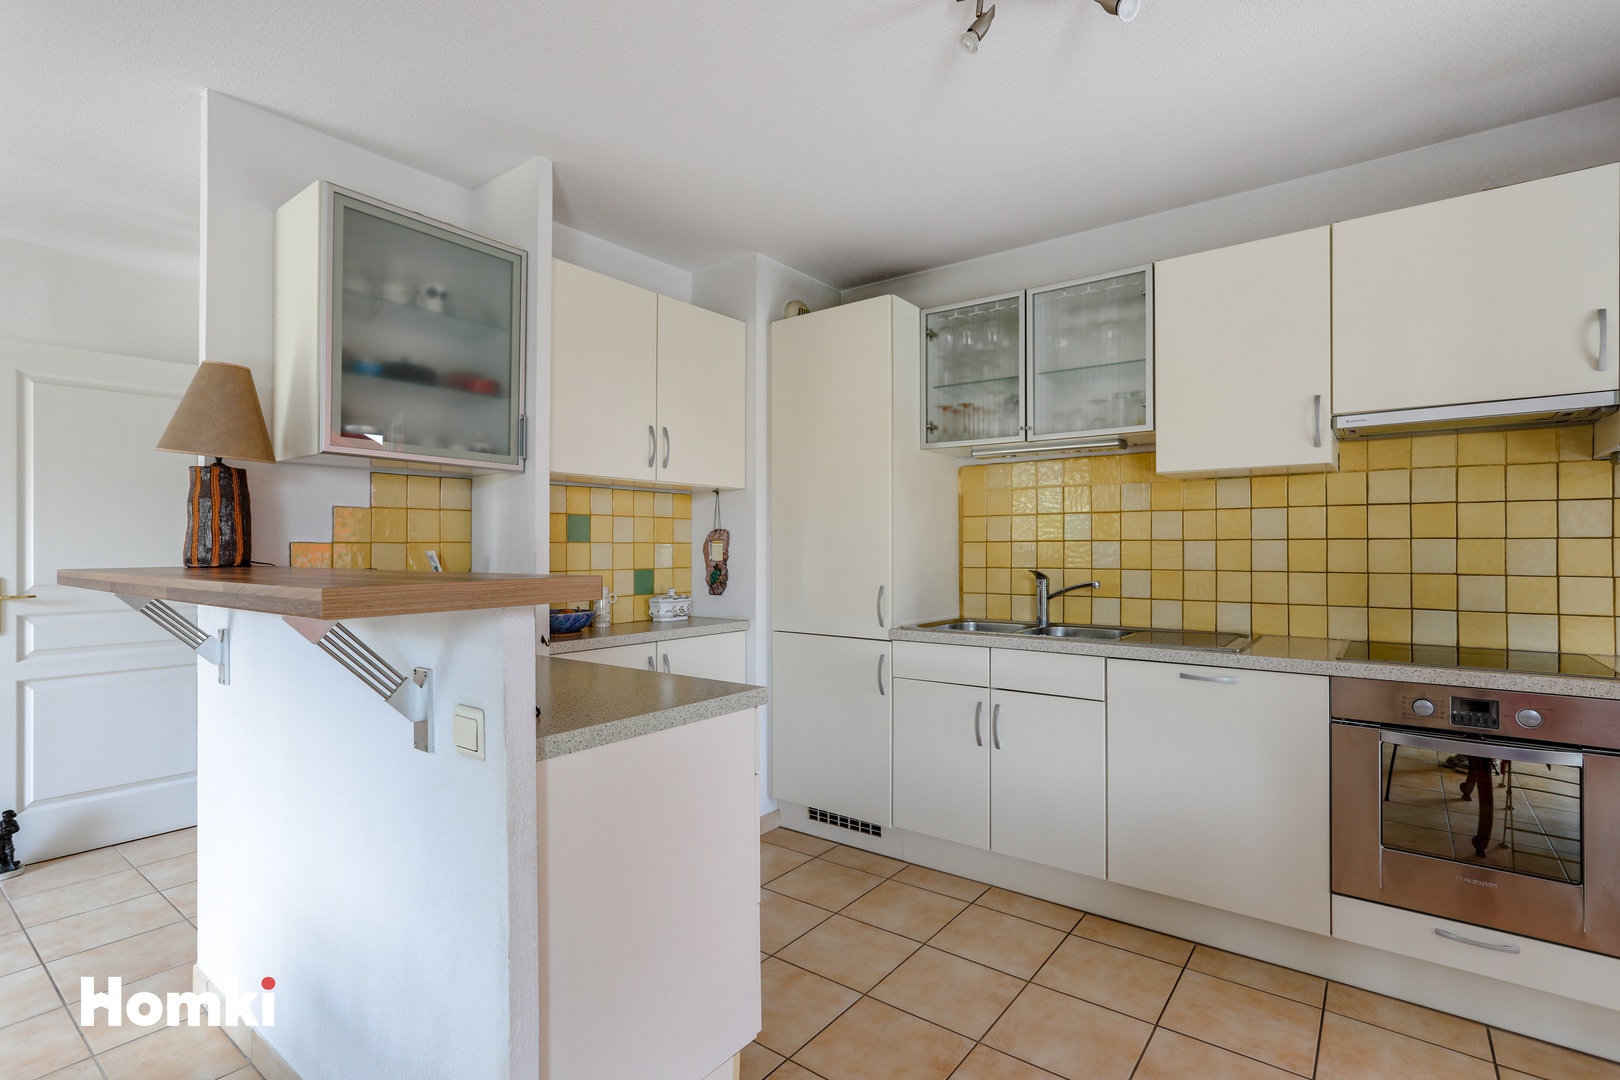 Homki - Vente Appartement  de 52.0 m² à Antibes 06600